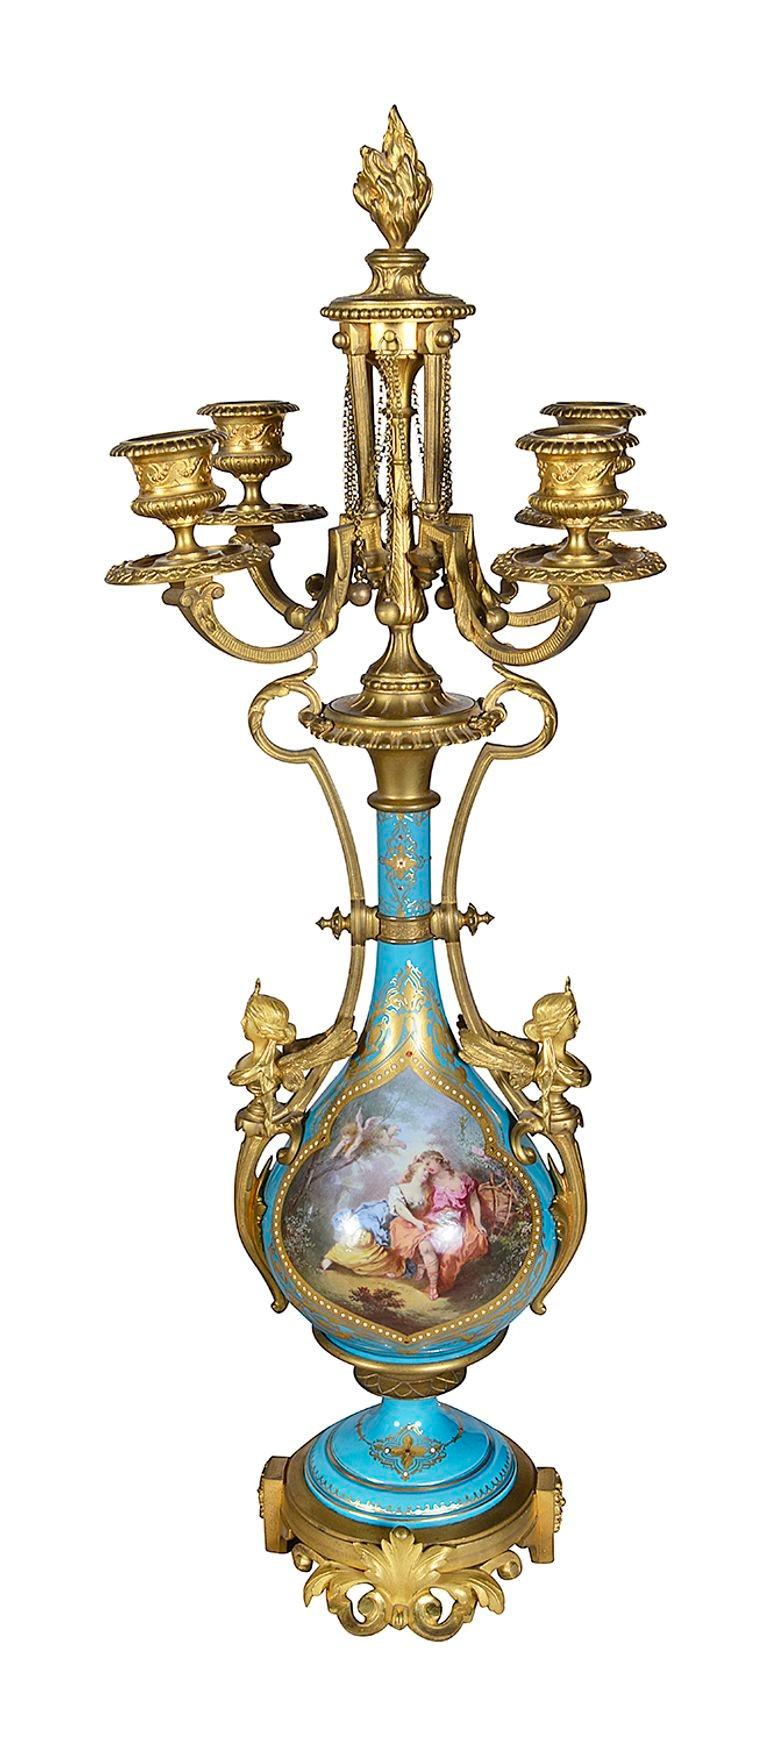 Eine sehr gute Qualität Französisch 19. Jahrhundert Louis XVI Sèvres Stil Uhr garniture. Liegende Jungfrauen mit Blumengirlanden stützen eine Urne über dem Zifferblatt. Türkisfarbenes Porzellan mit Perlen und vergoldetem Dekor. Handgemalte